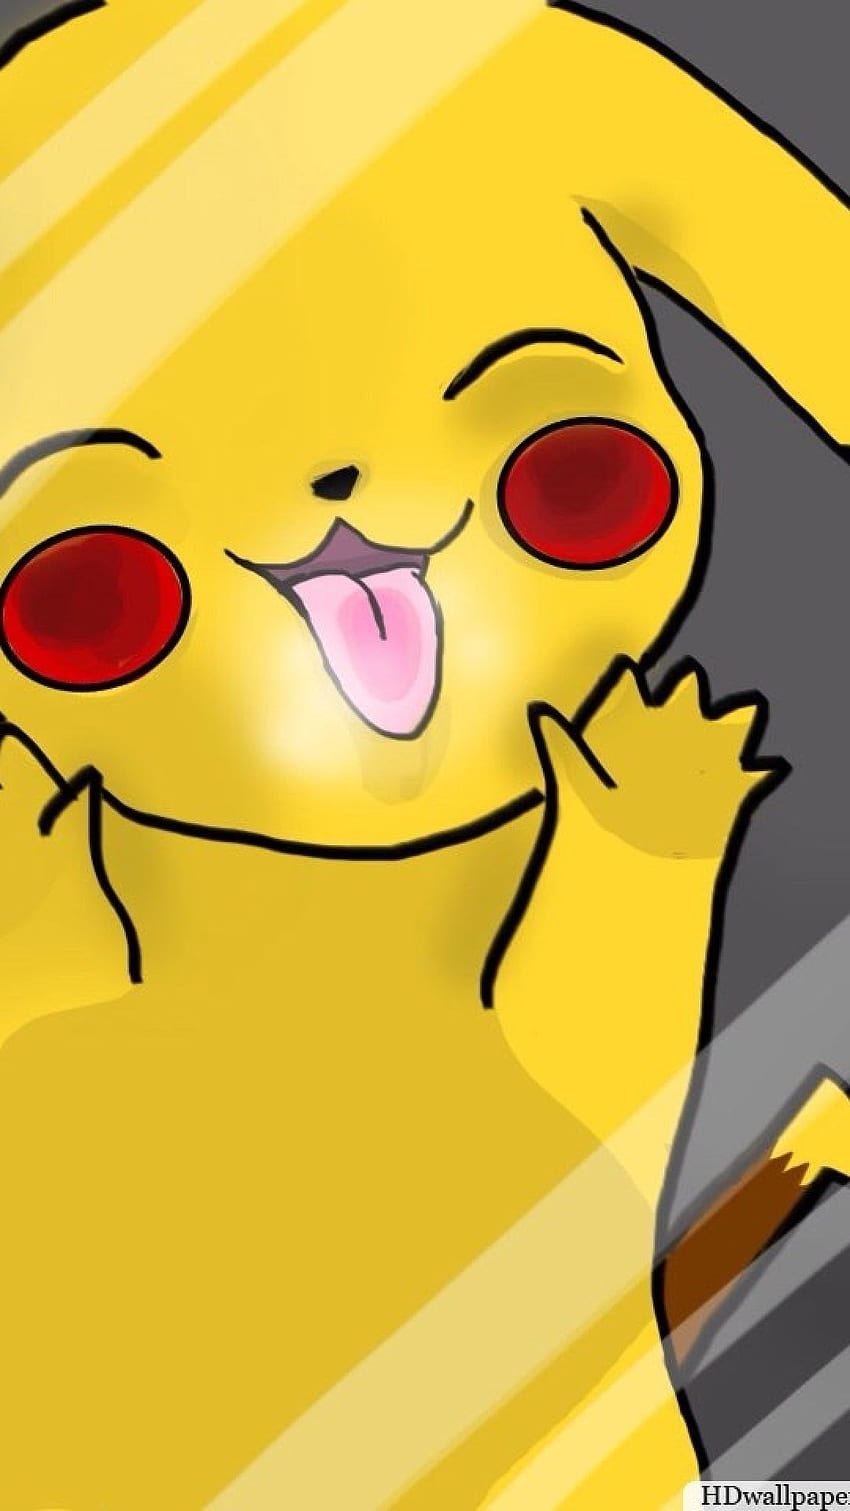 Bạn yêu thích Pikachu và muốn tìm kiếm một hình nền xinh xắn dành cho màn hình điện thoại của mình? Hãy thưởng thức hình nền cute Pikachu trong bức ảnh này, chắc chắn sẽ làm bạn cảm thấy vui vẻ và hạnh phúc!